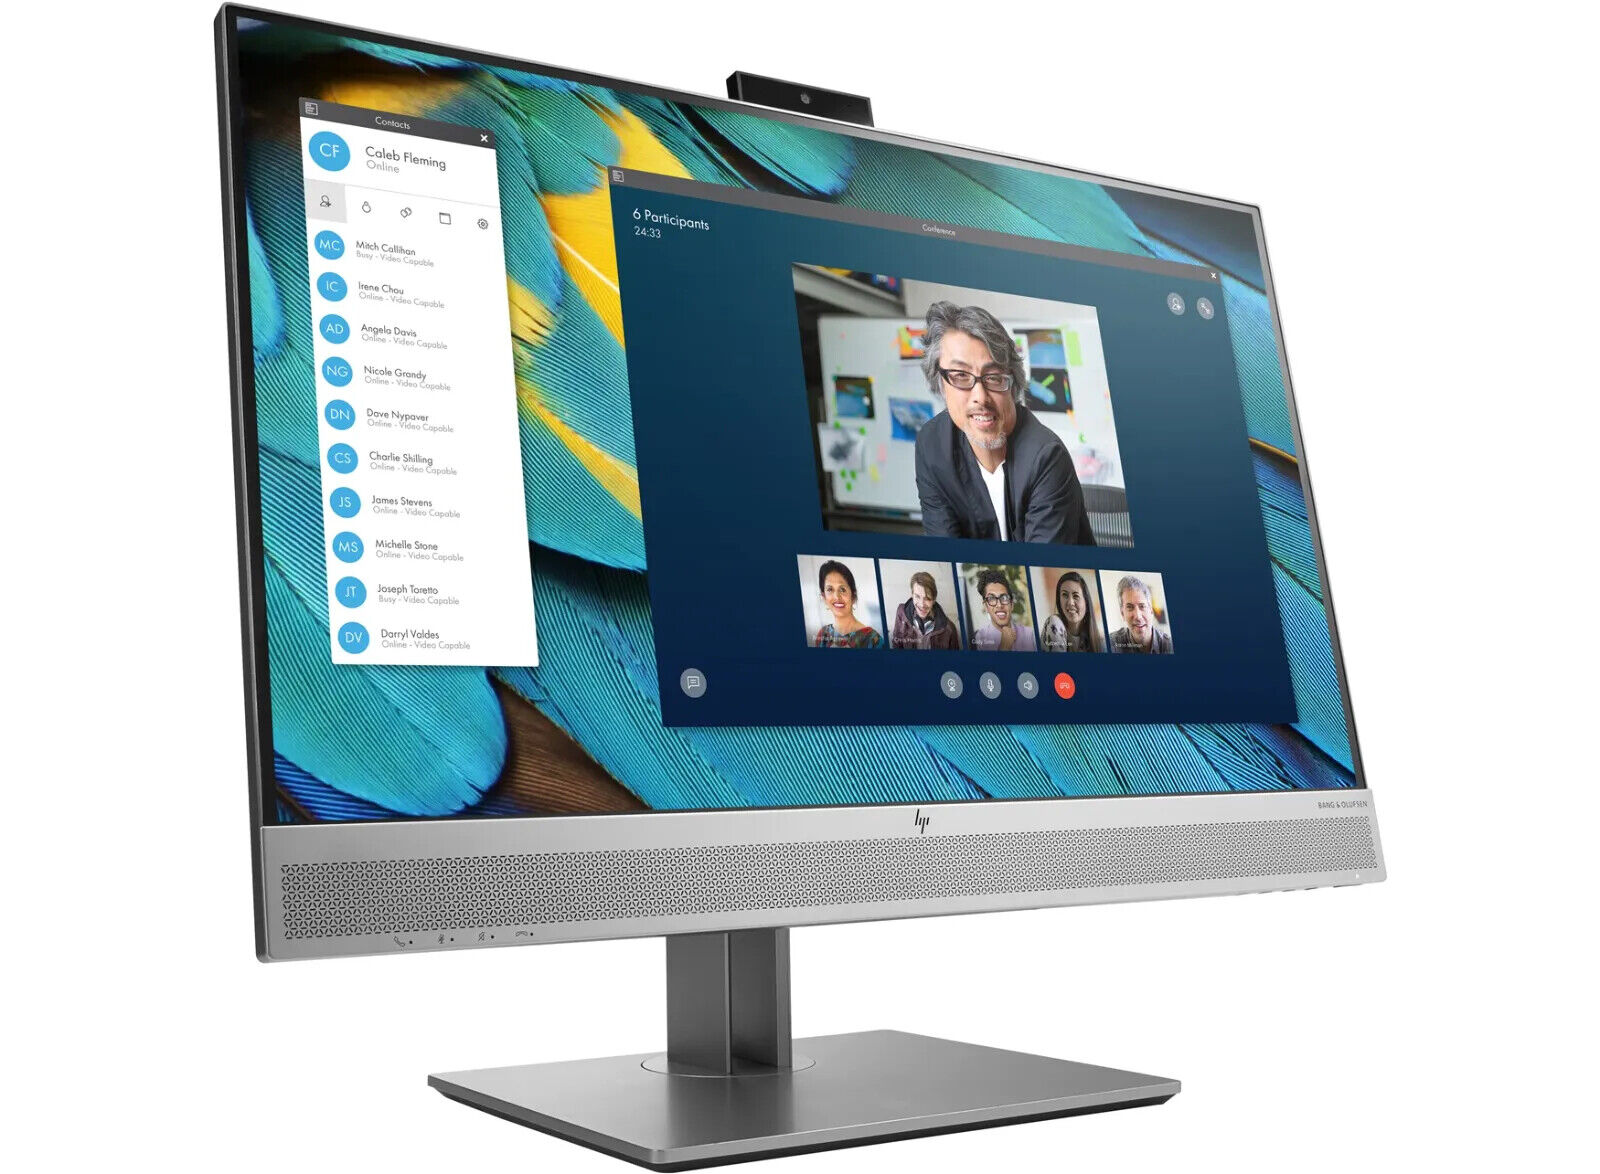 HP-EliteDisplay-E243m-238-IPS-LED-Monitor-with-Pop-up-Webcam-Audio-165345694697-3